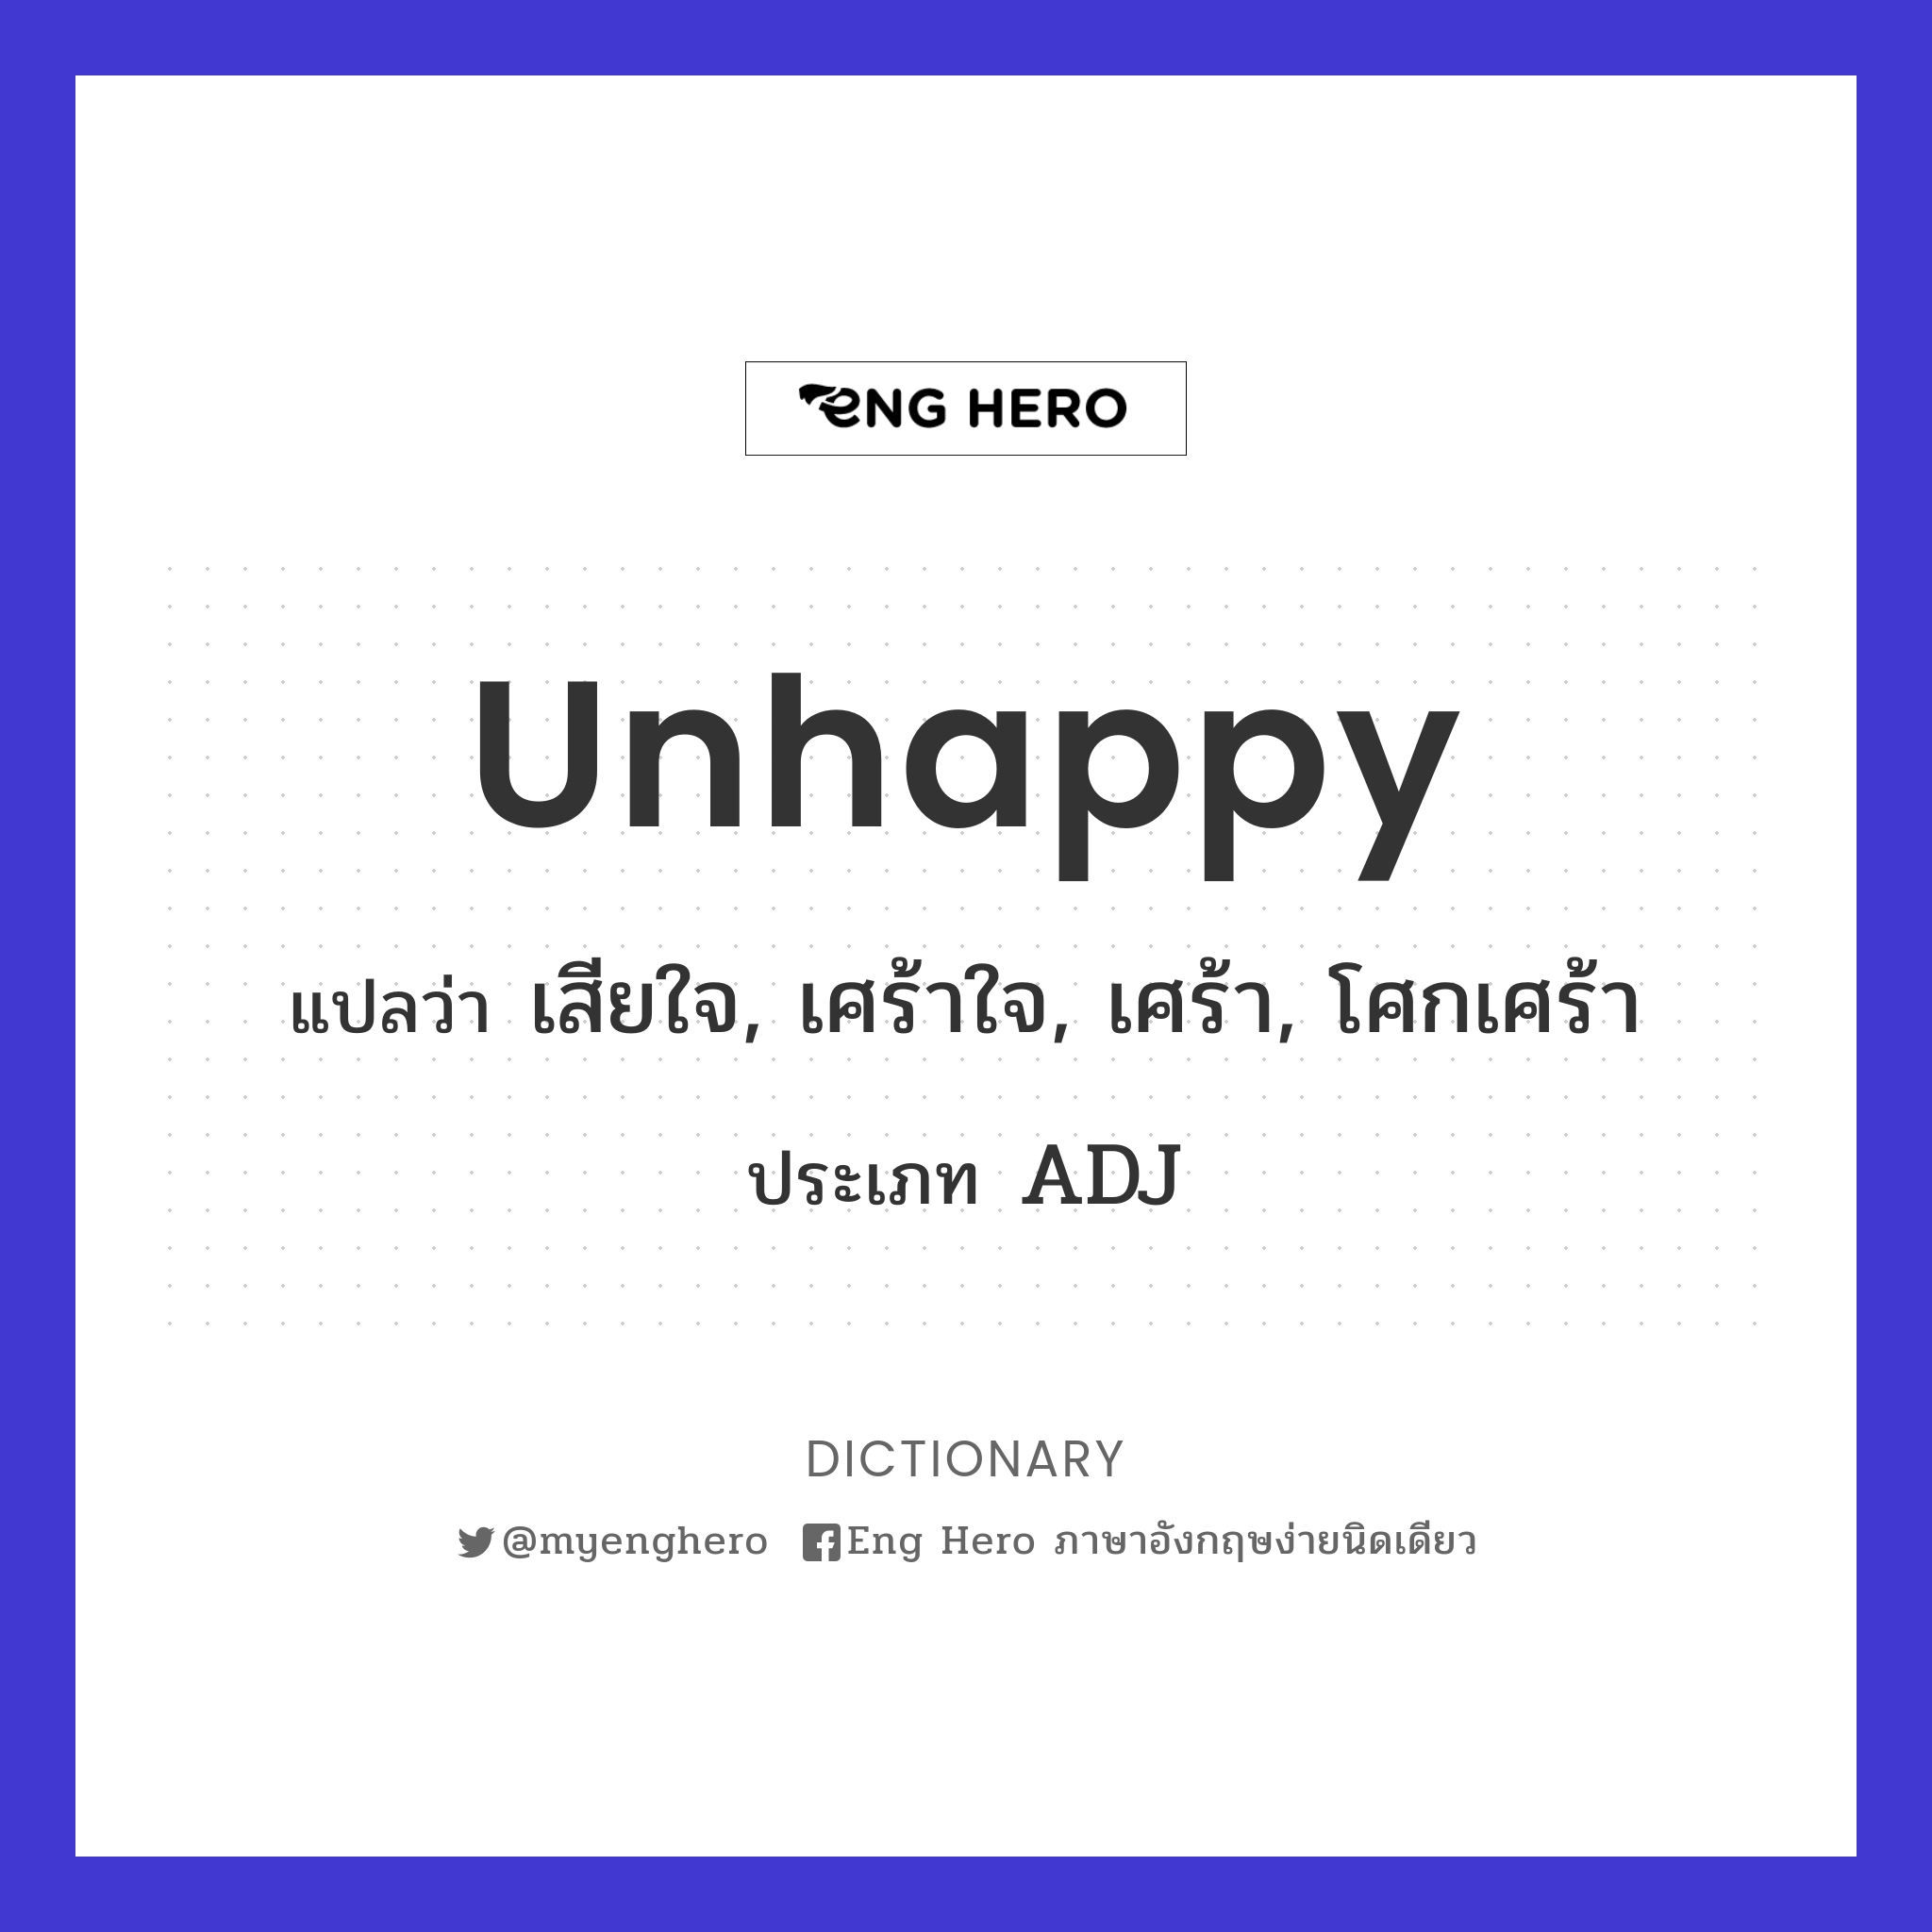 unhappy